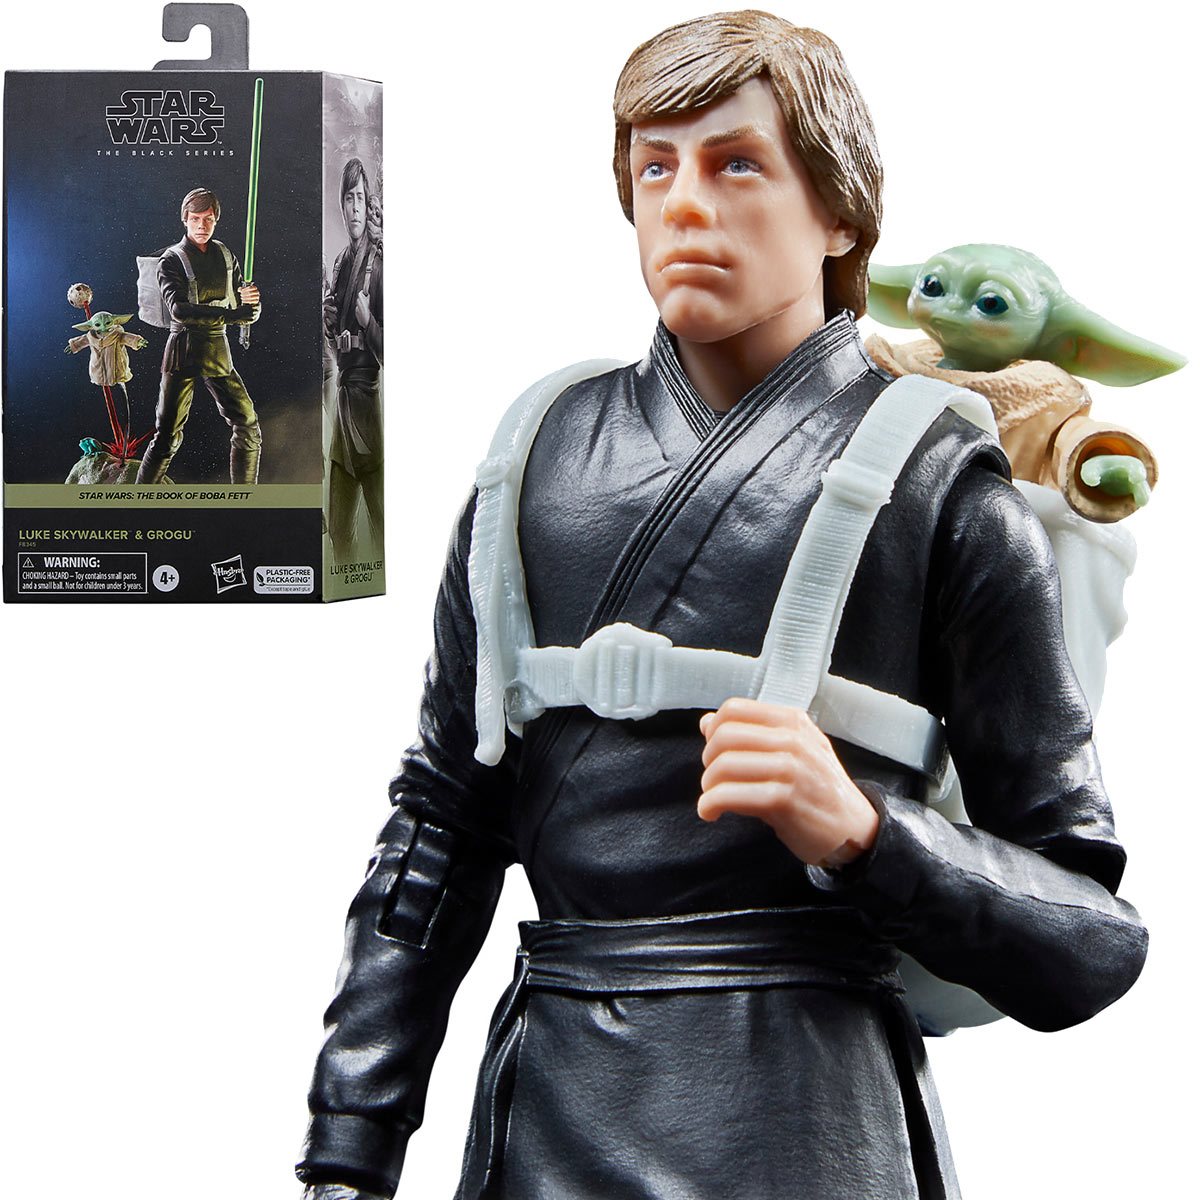 Star Wars The Black Series Luke Skywalker & Grogu 6-Inch Action Figures HSF8345 5010996154996